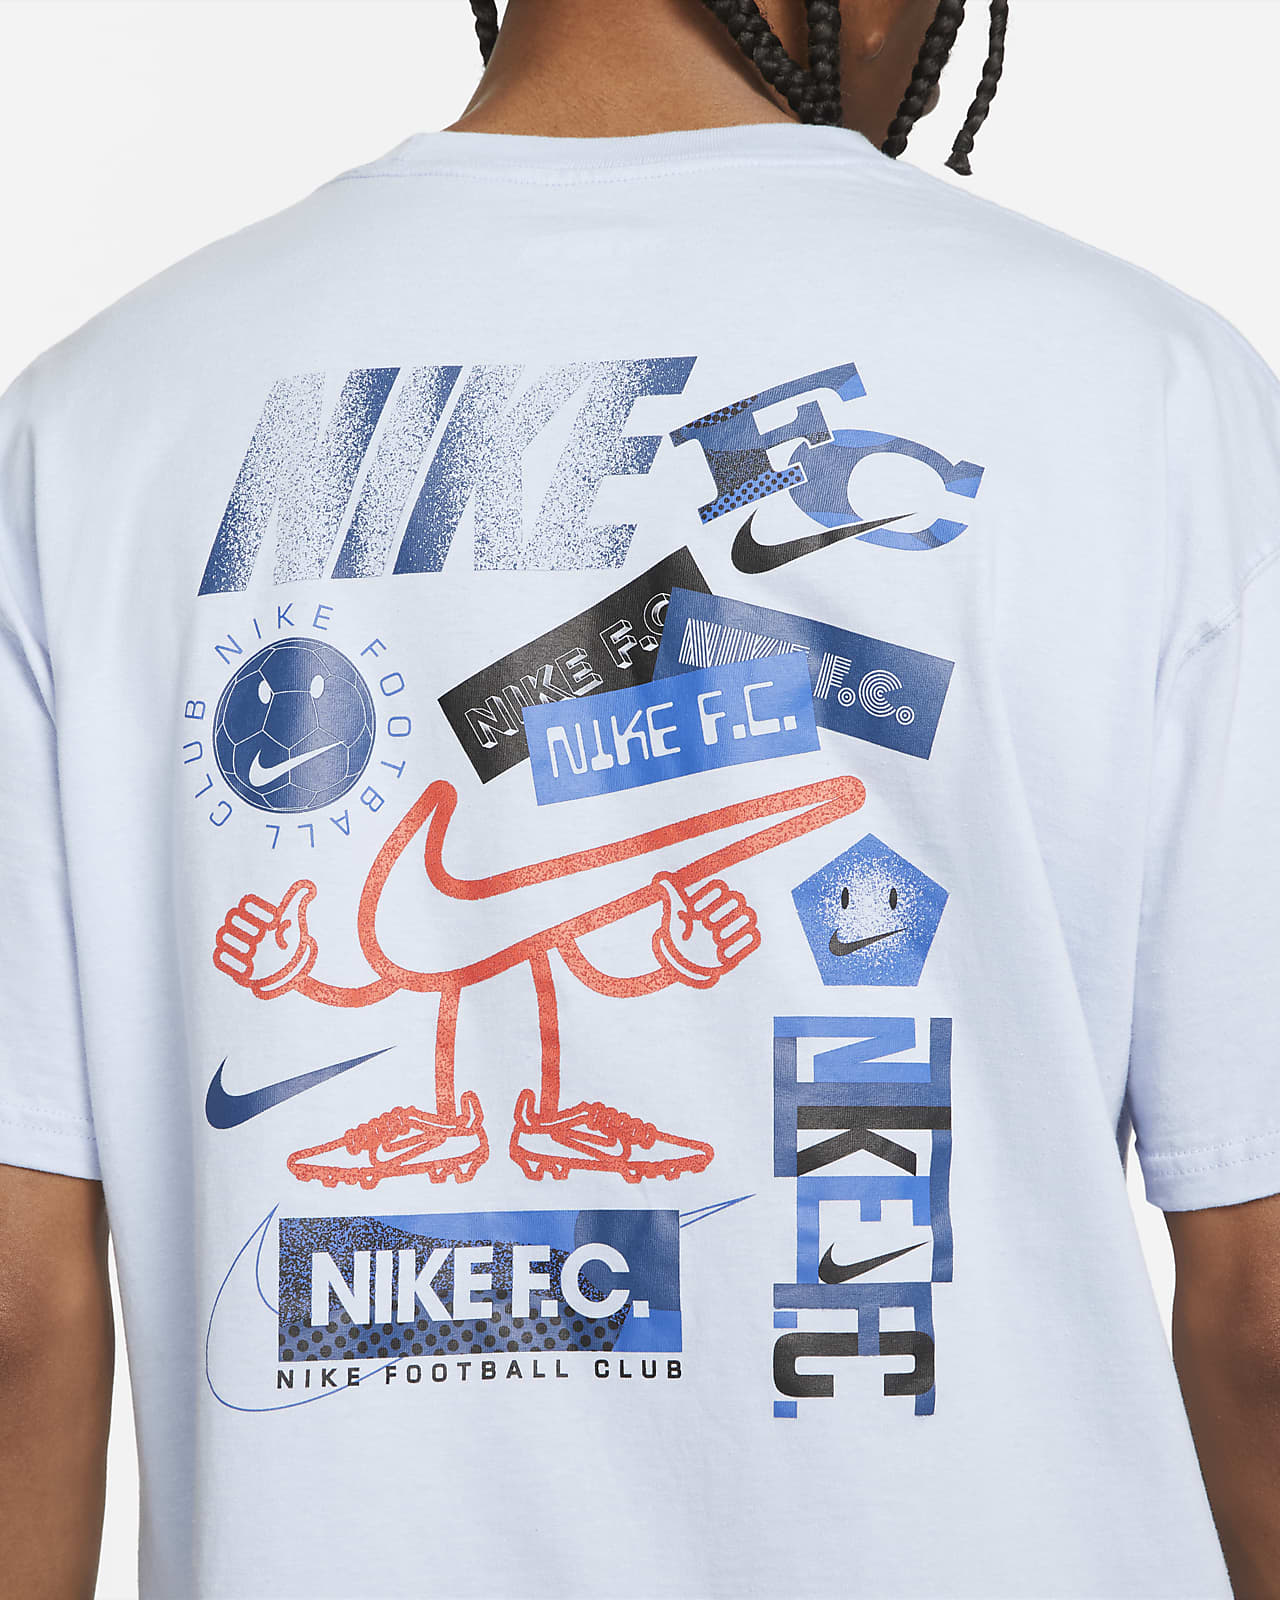 Nike F.C. Men's Soccer T-Shirt.